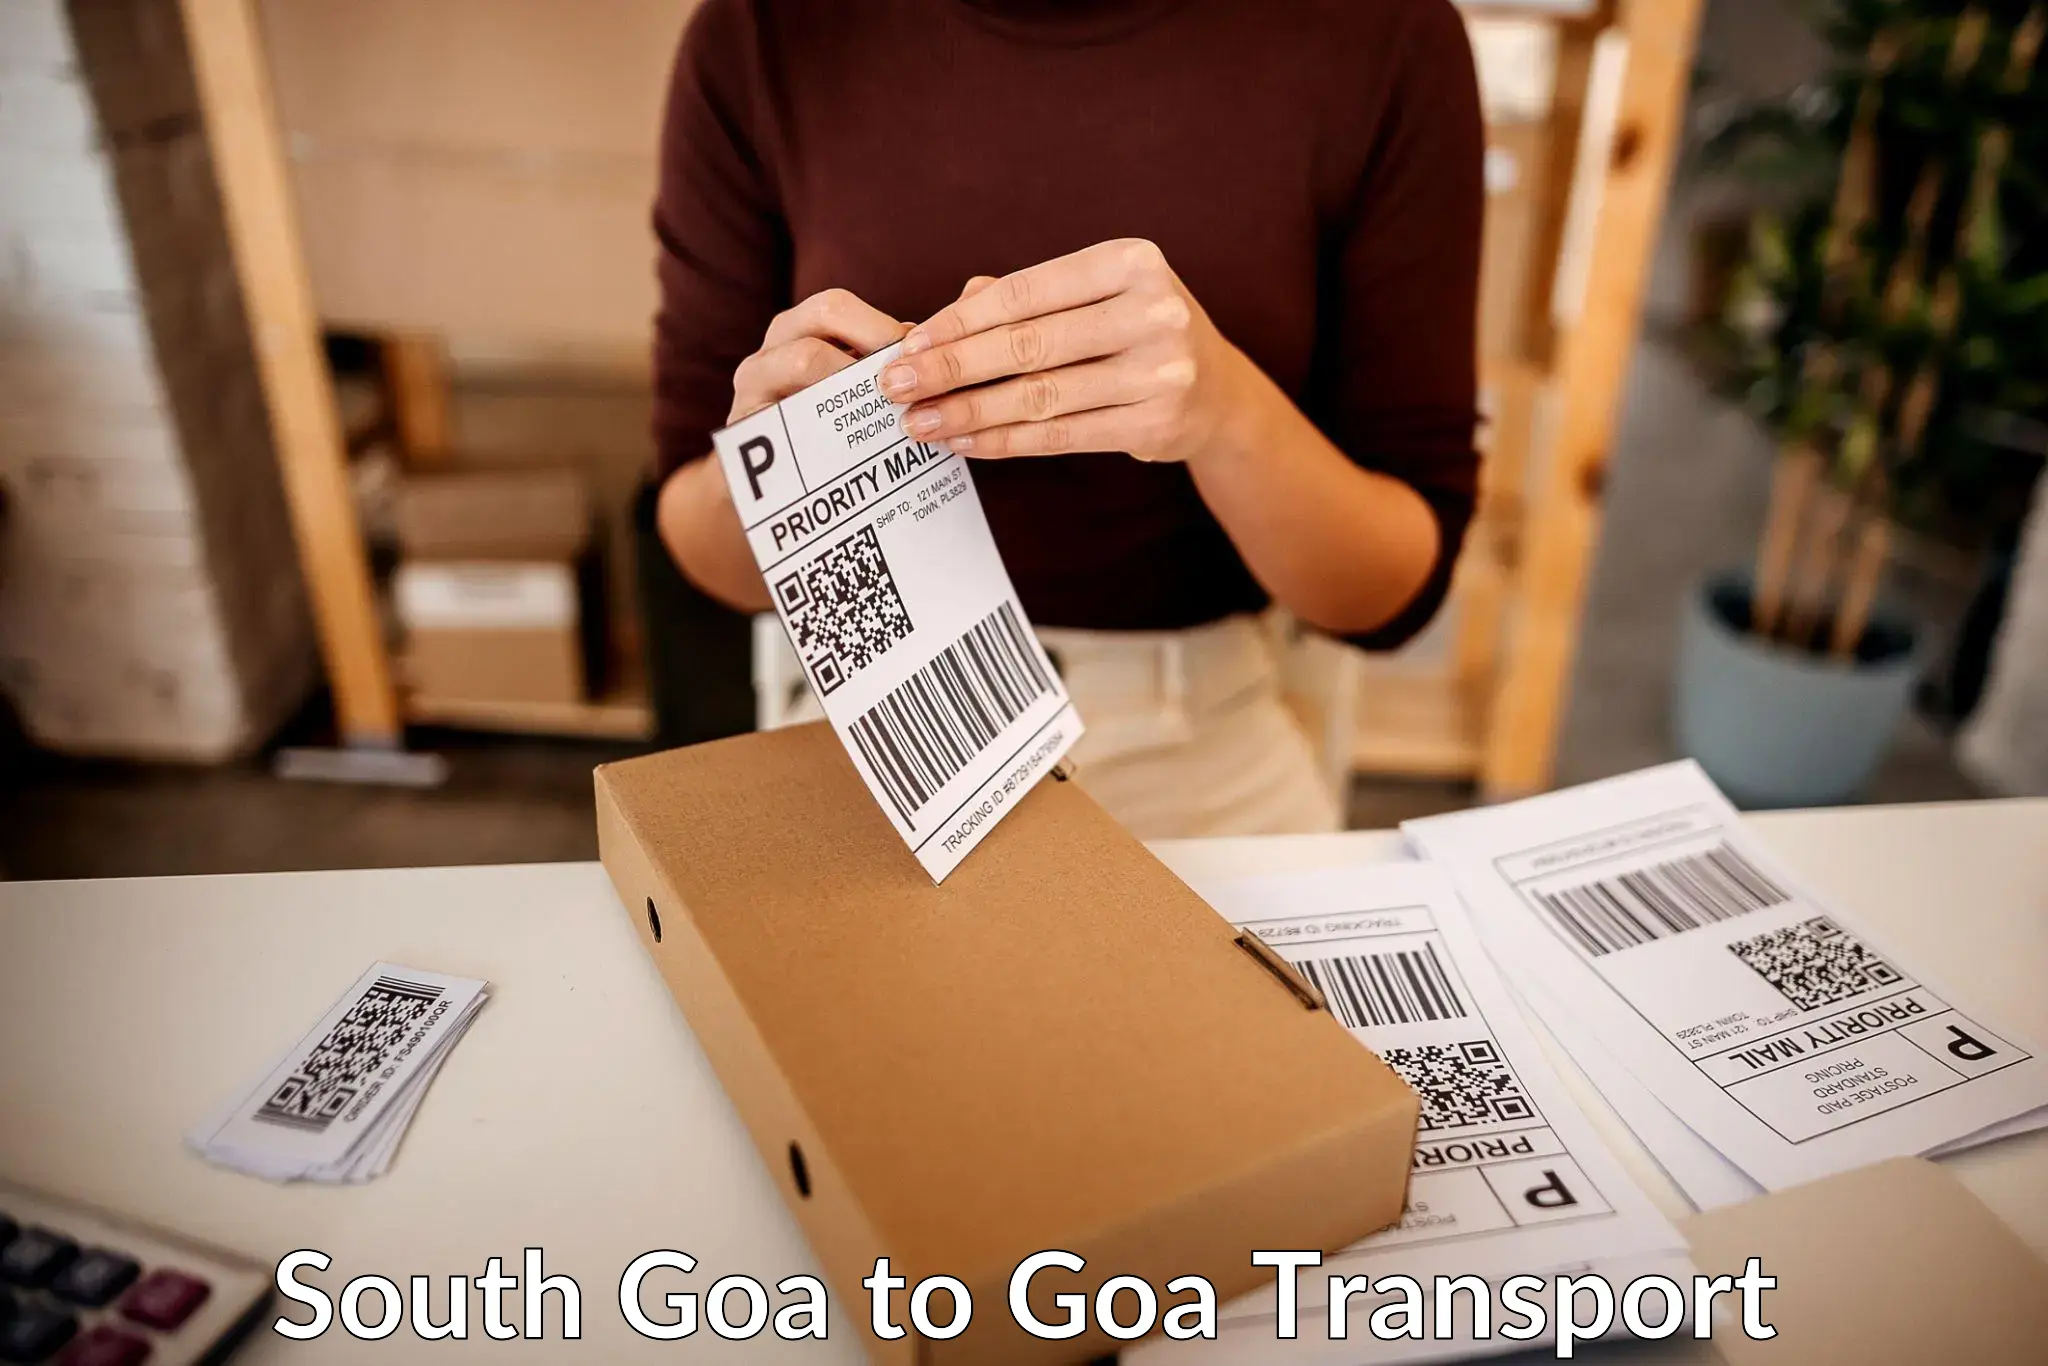 Express transport services South Goa to Mormugao Port